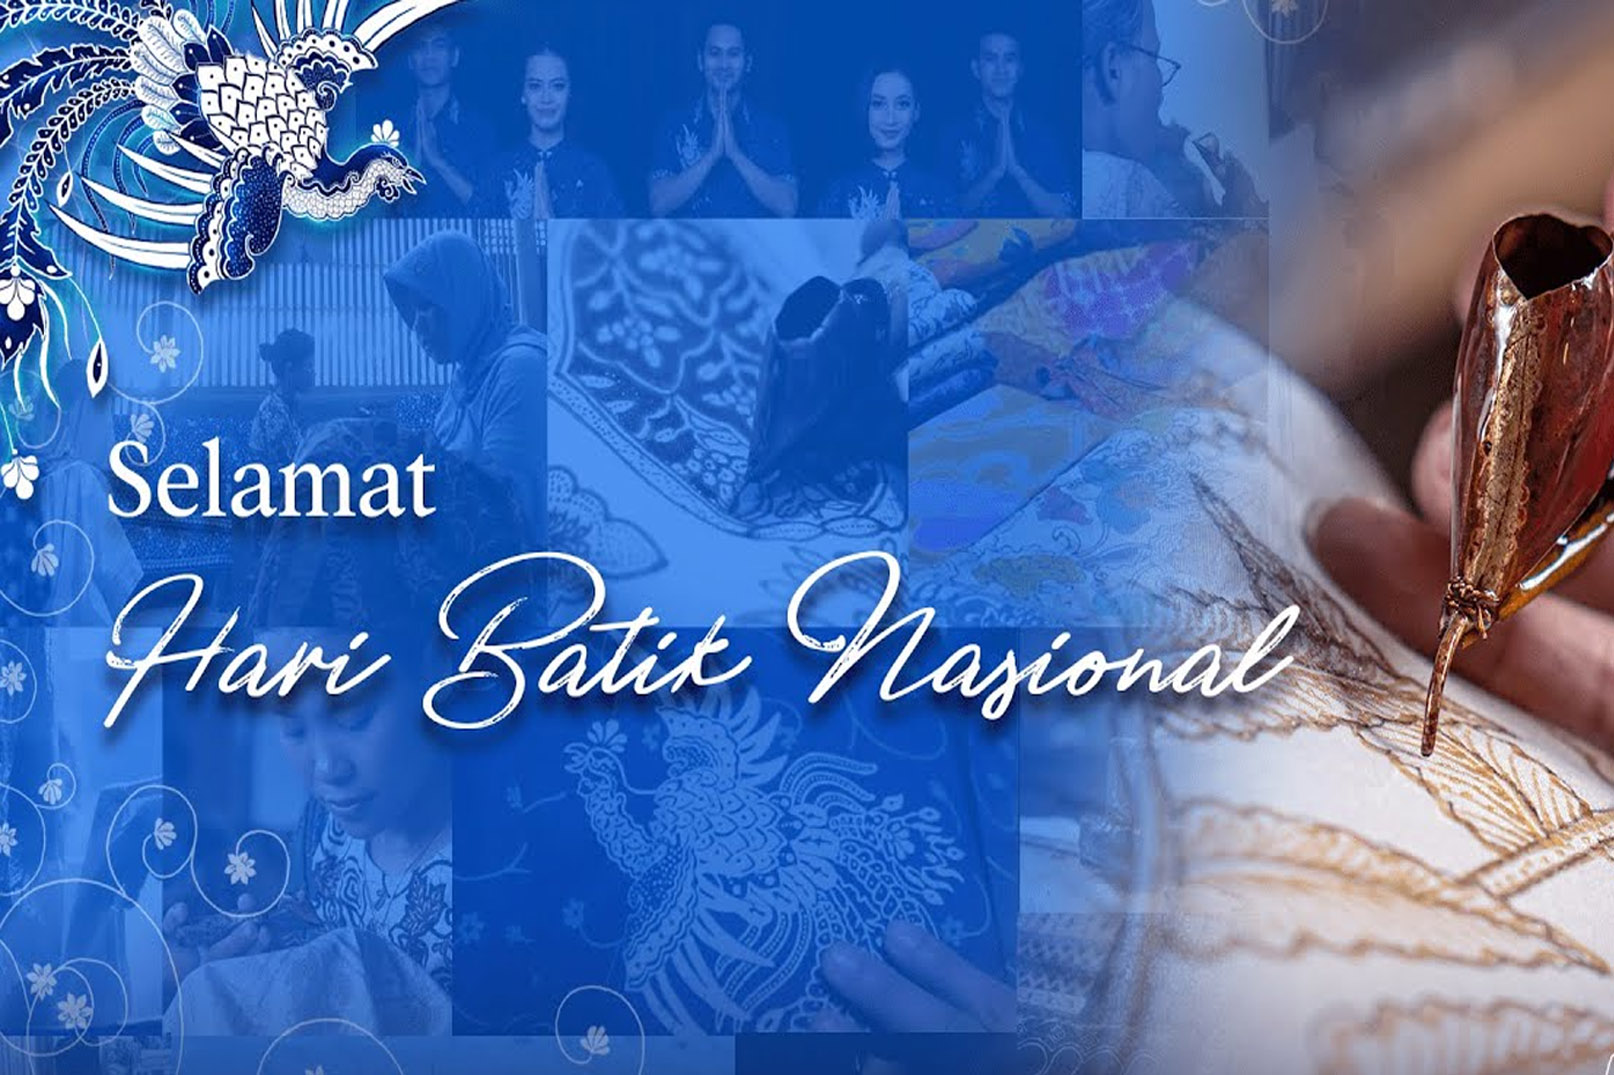 Serba-Serbi Hari Batik Nasional: Merayakan Keren-nya Batik Indonesia!